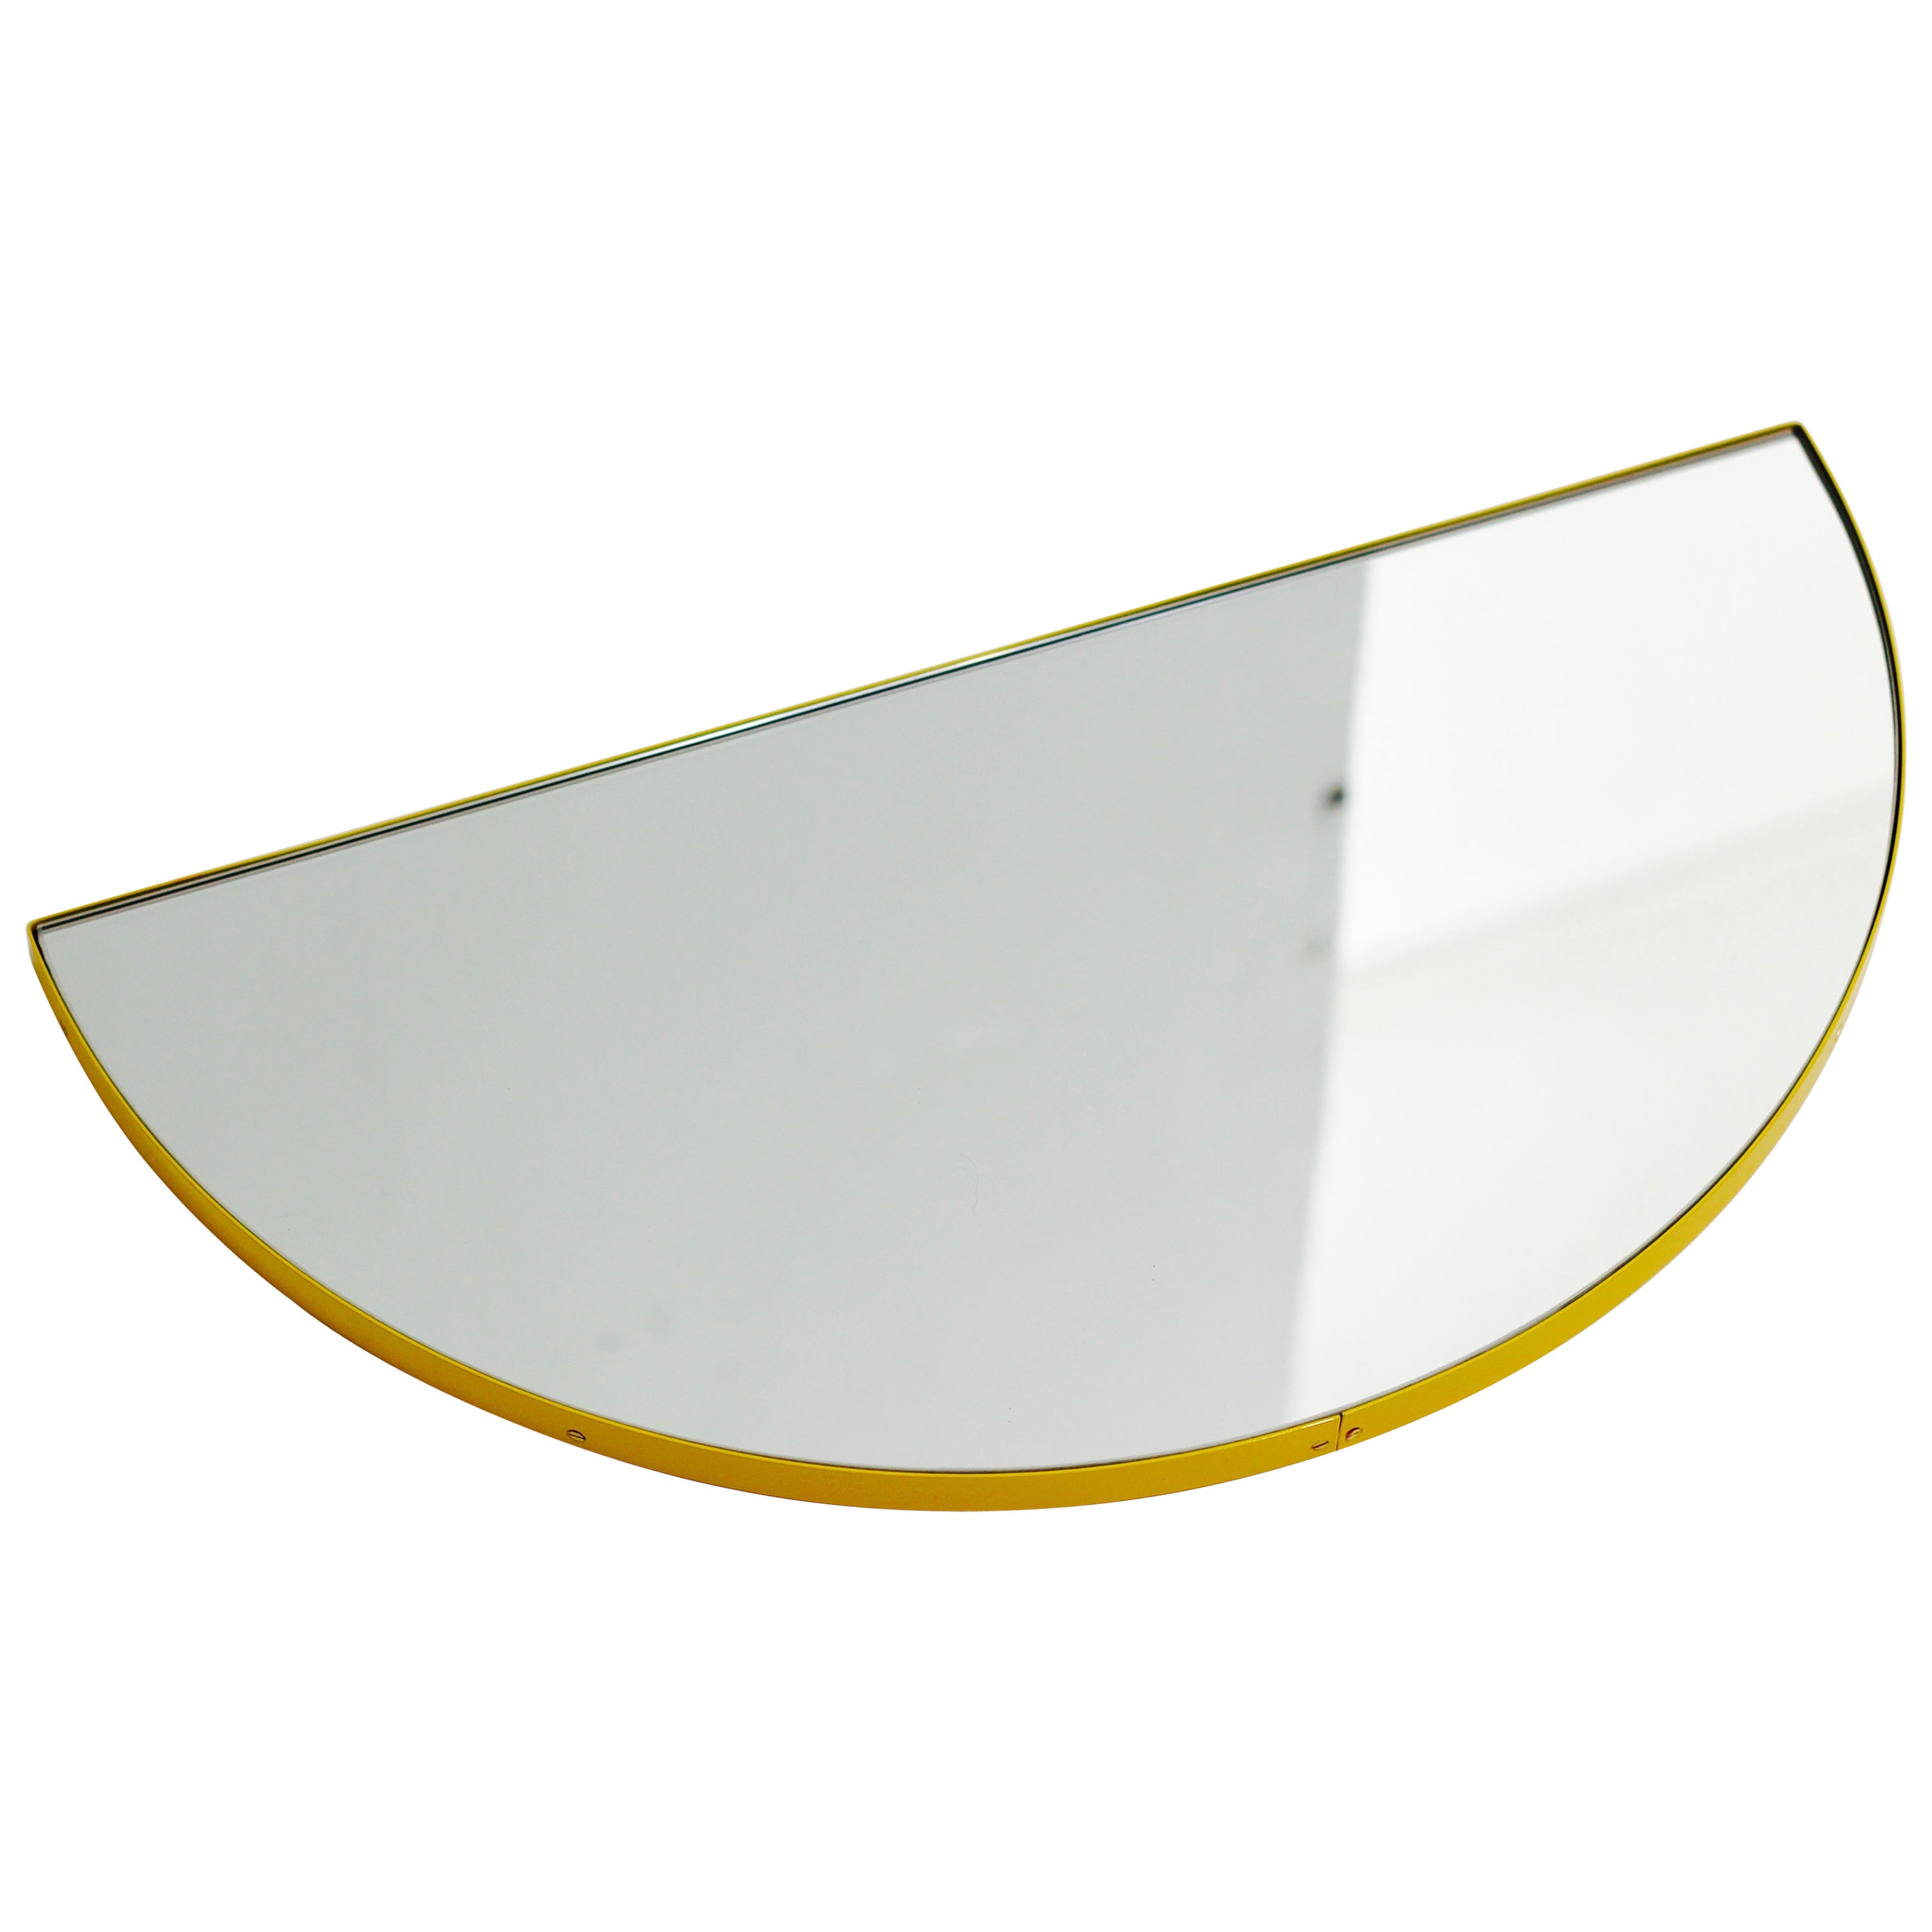 Luna Semi-circular Minimalist Mirror with a Yellow Frame, Medium For Sale